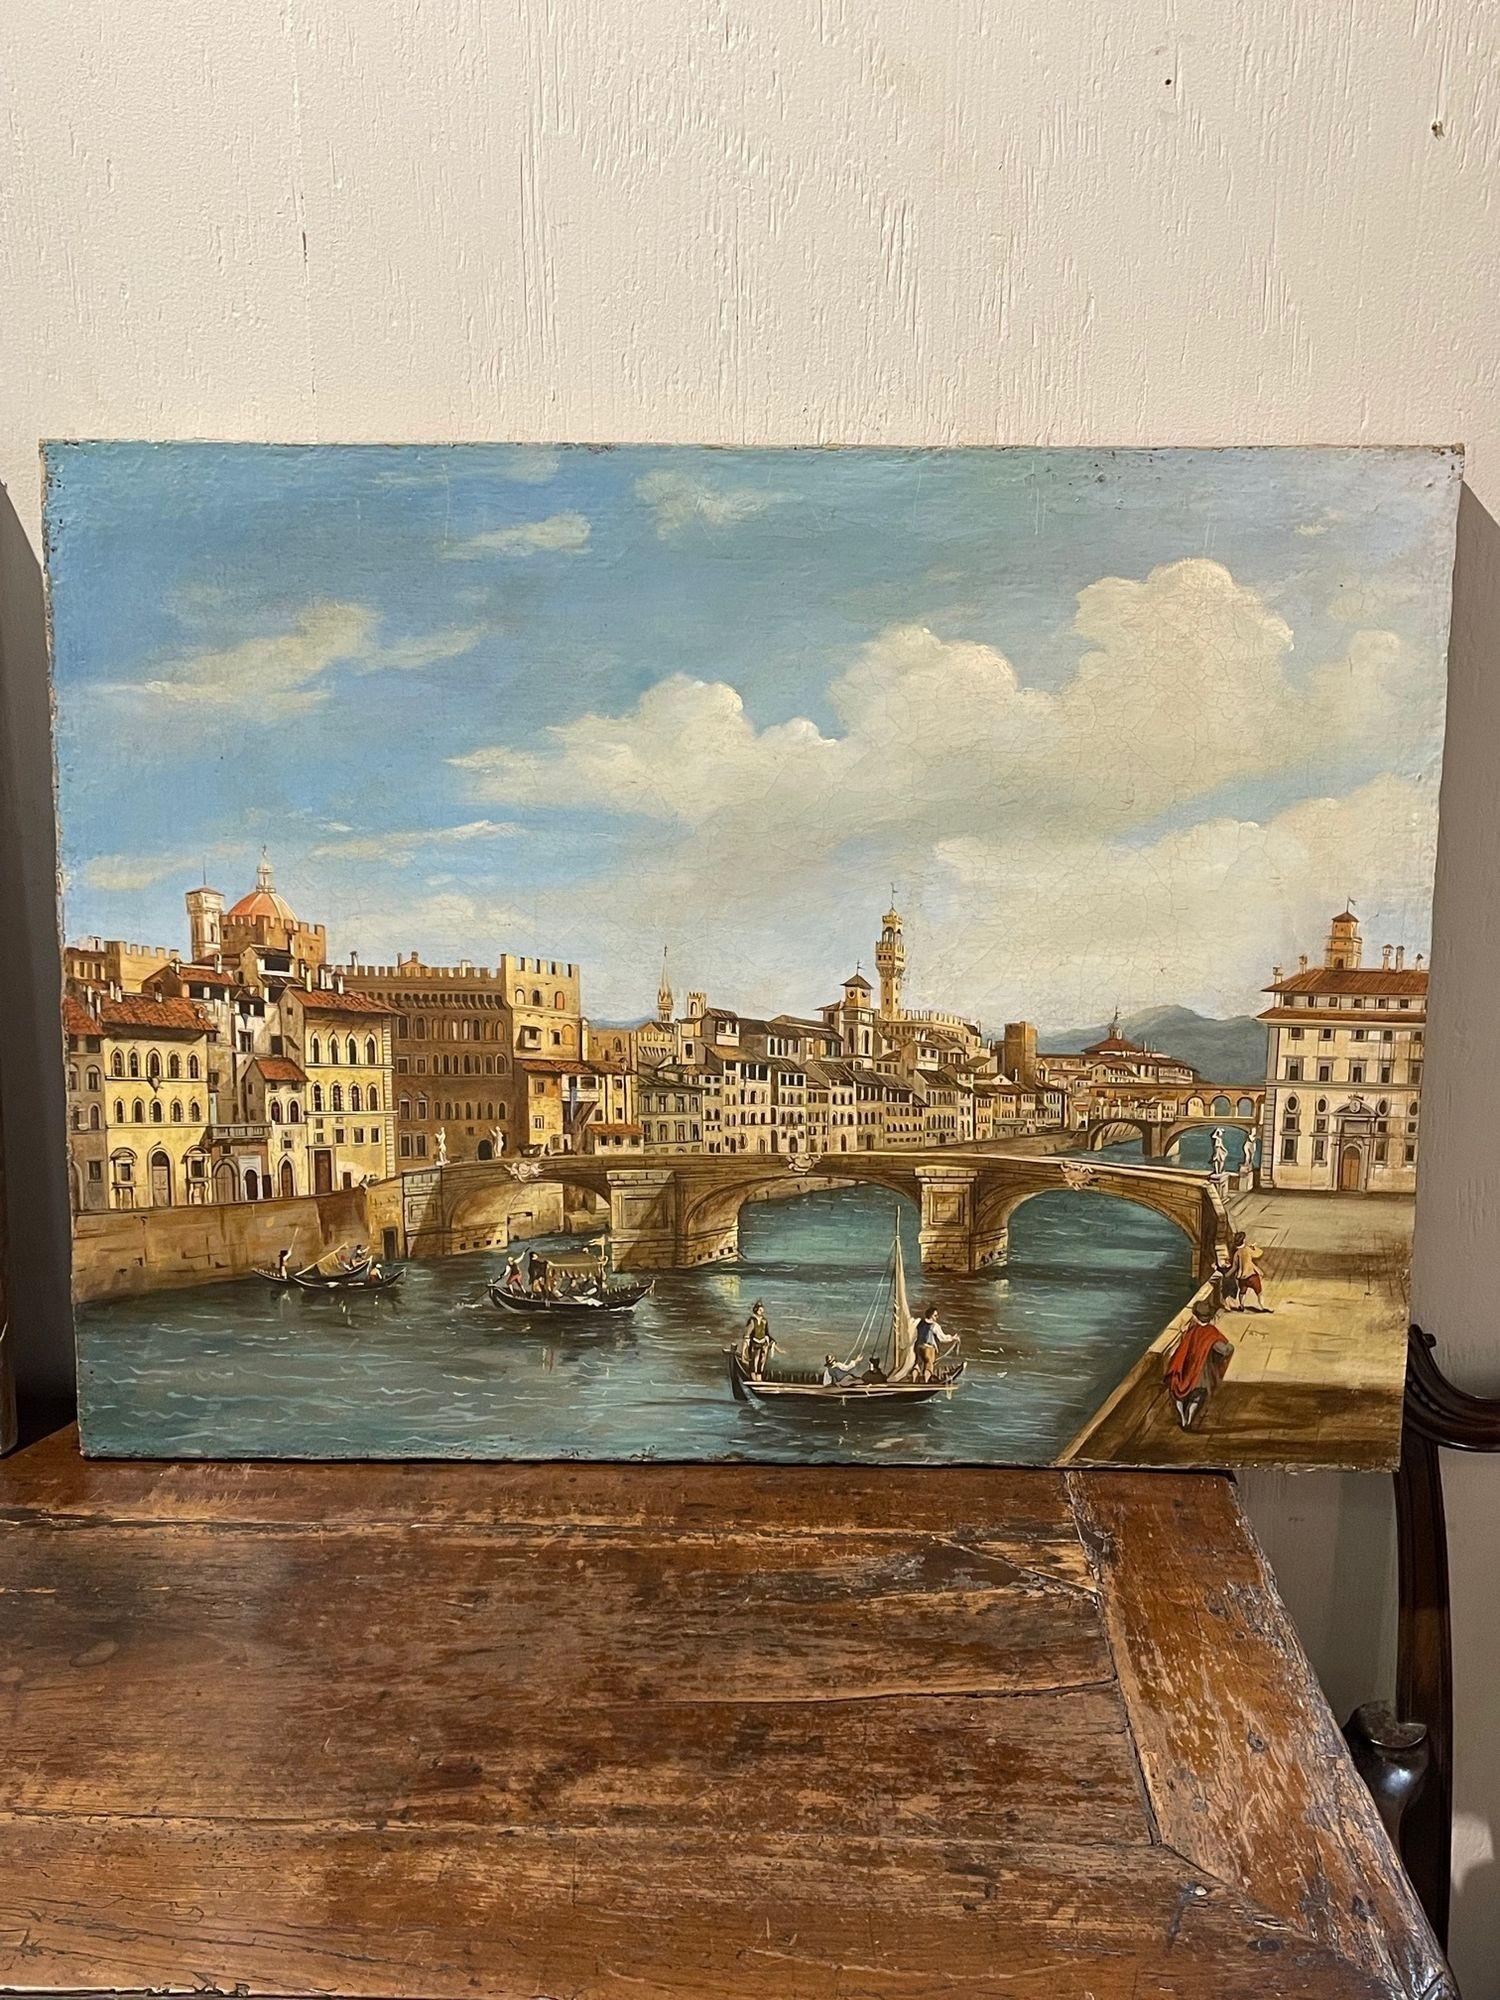 Rare paire de peintures à l'huile sur toile vénitiennes du XIXe siècle. Ces peintures représentent une scène de port vénitien avec des bateaux, des bâtiments et des personnes. De très belles œuvres d'art !